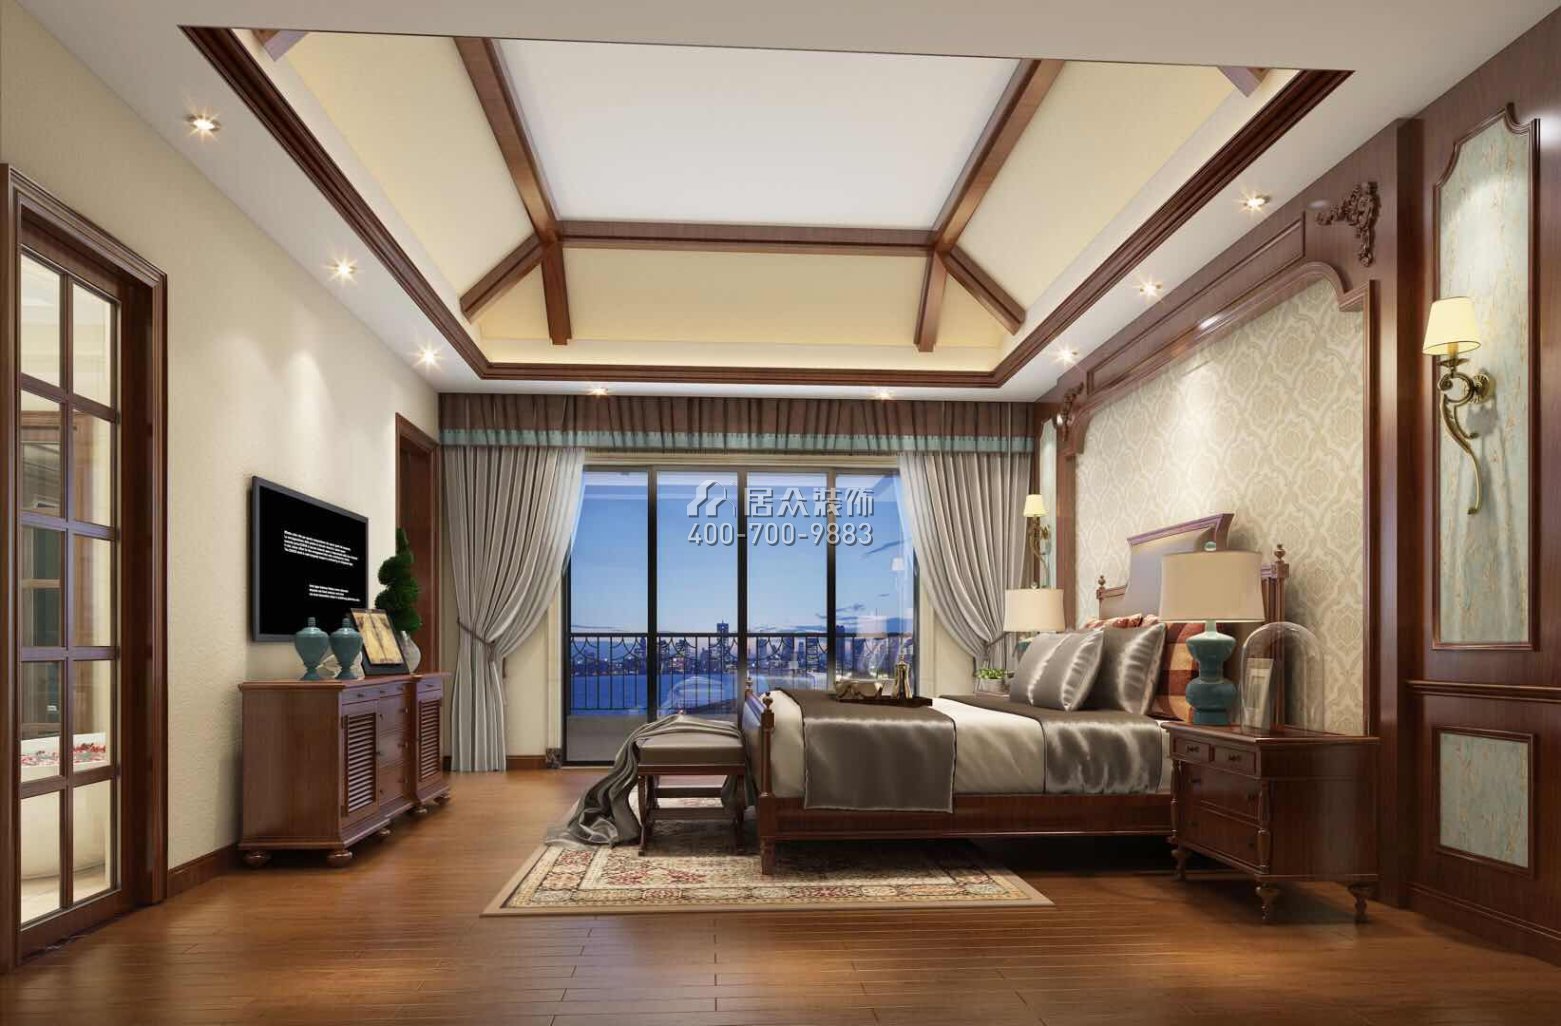 海逸豪庭御峰268平方米美式风格别墅户型卧室装修效果图